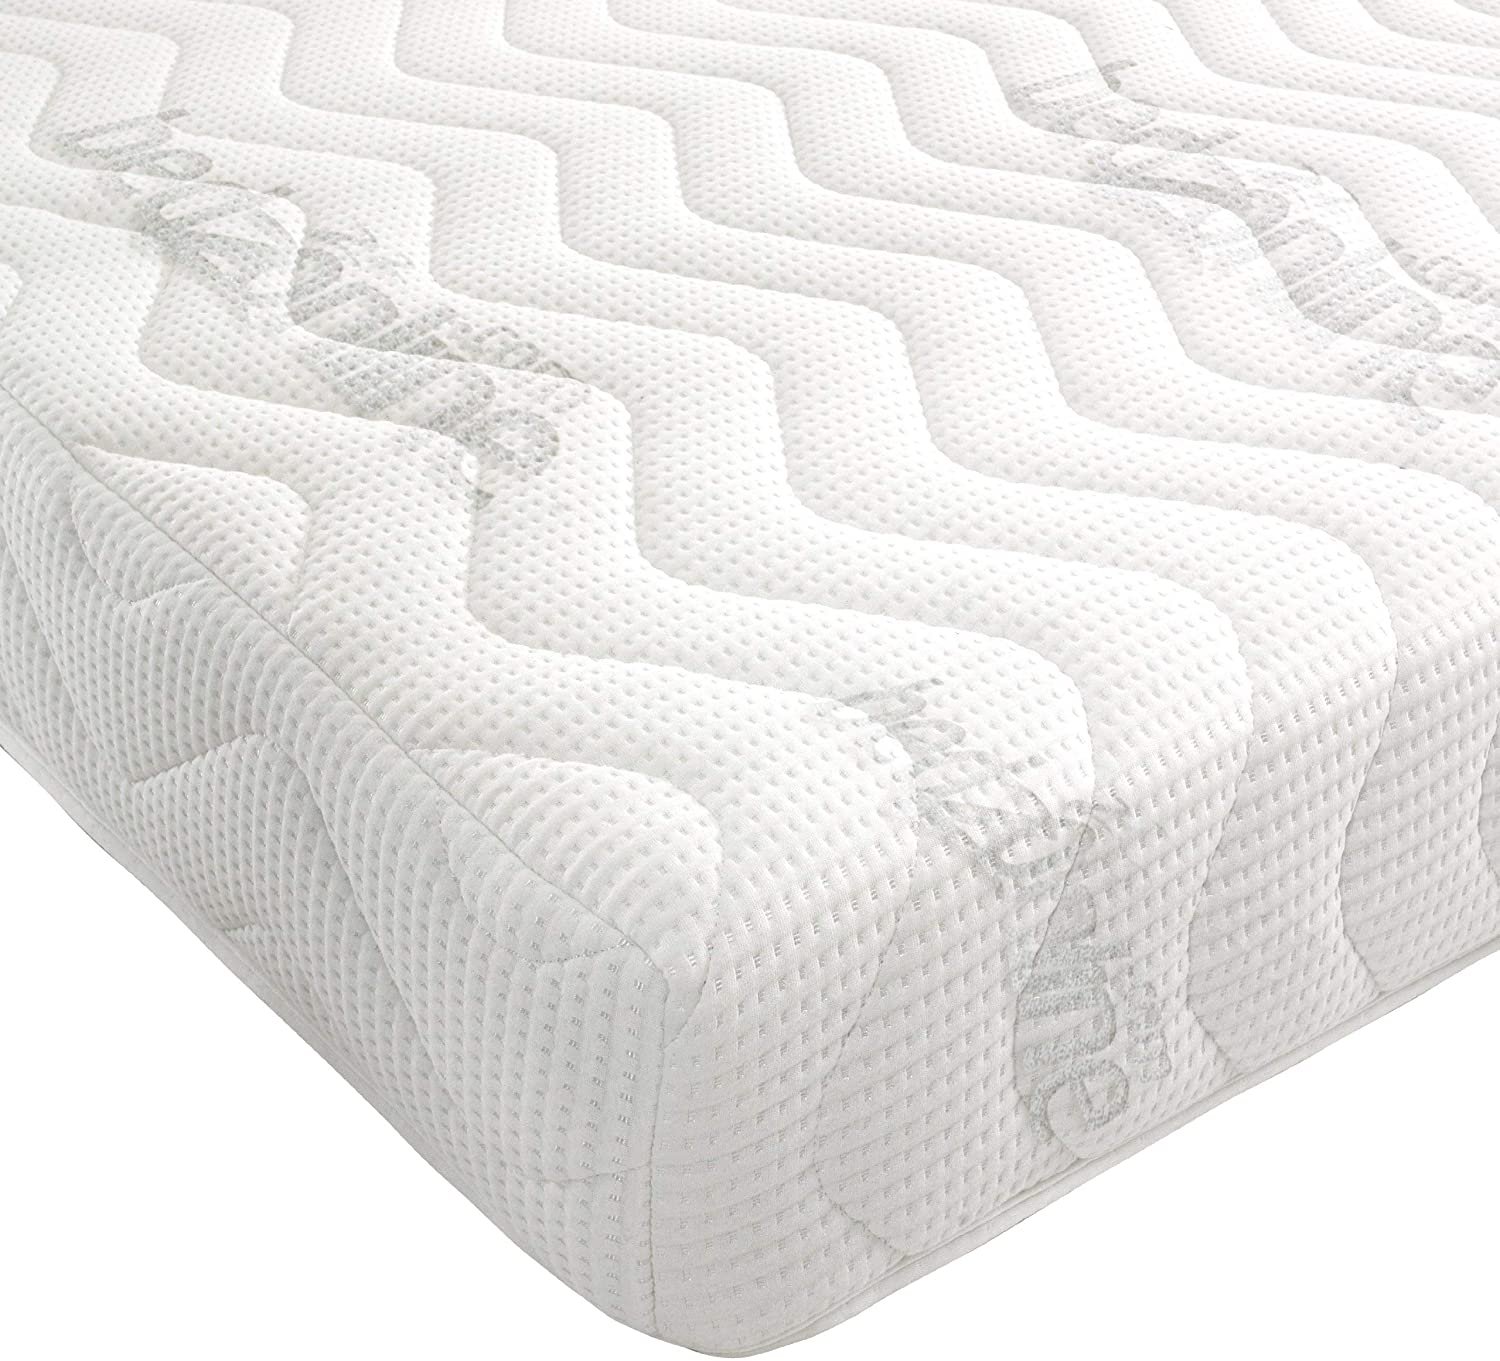 Bedzonline 7-Zone Memory Foam Rolled Mattress